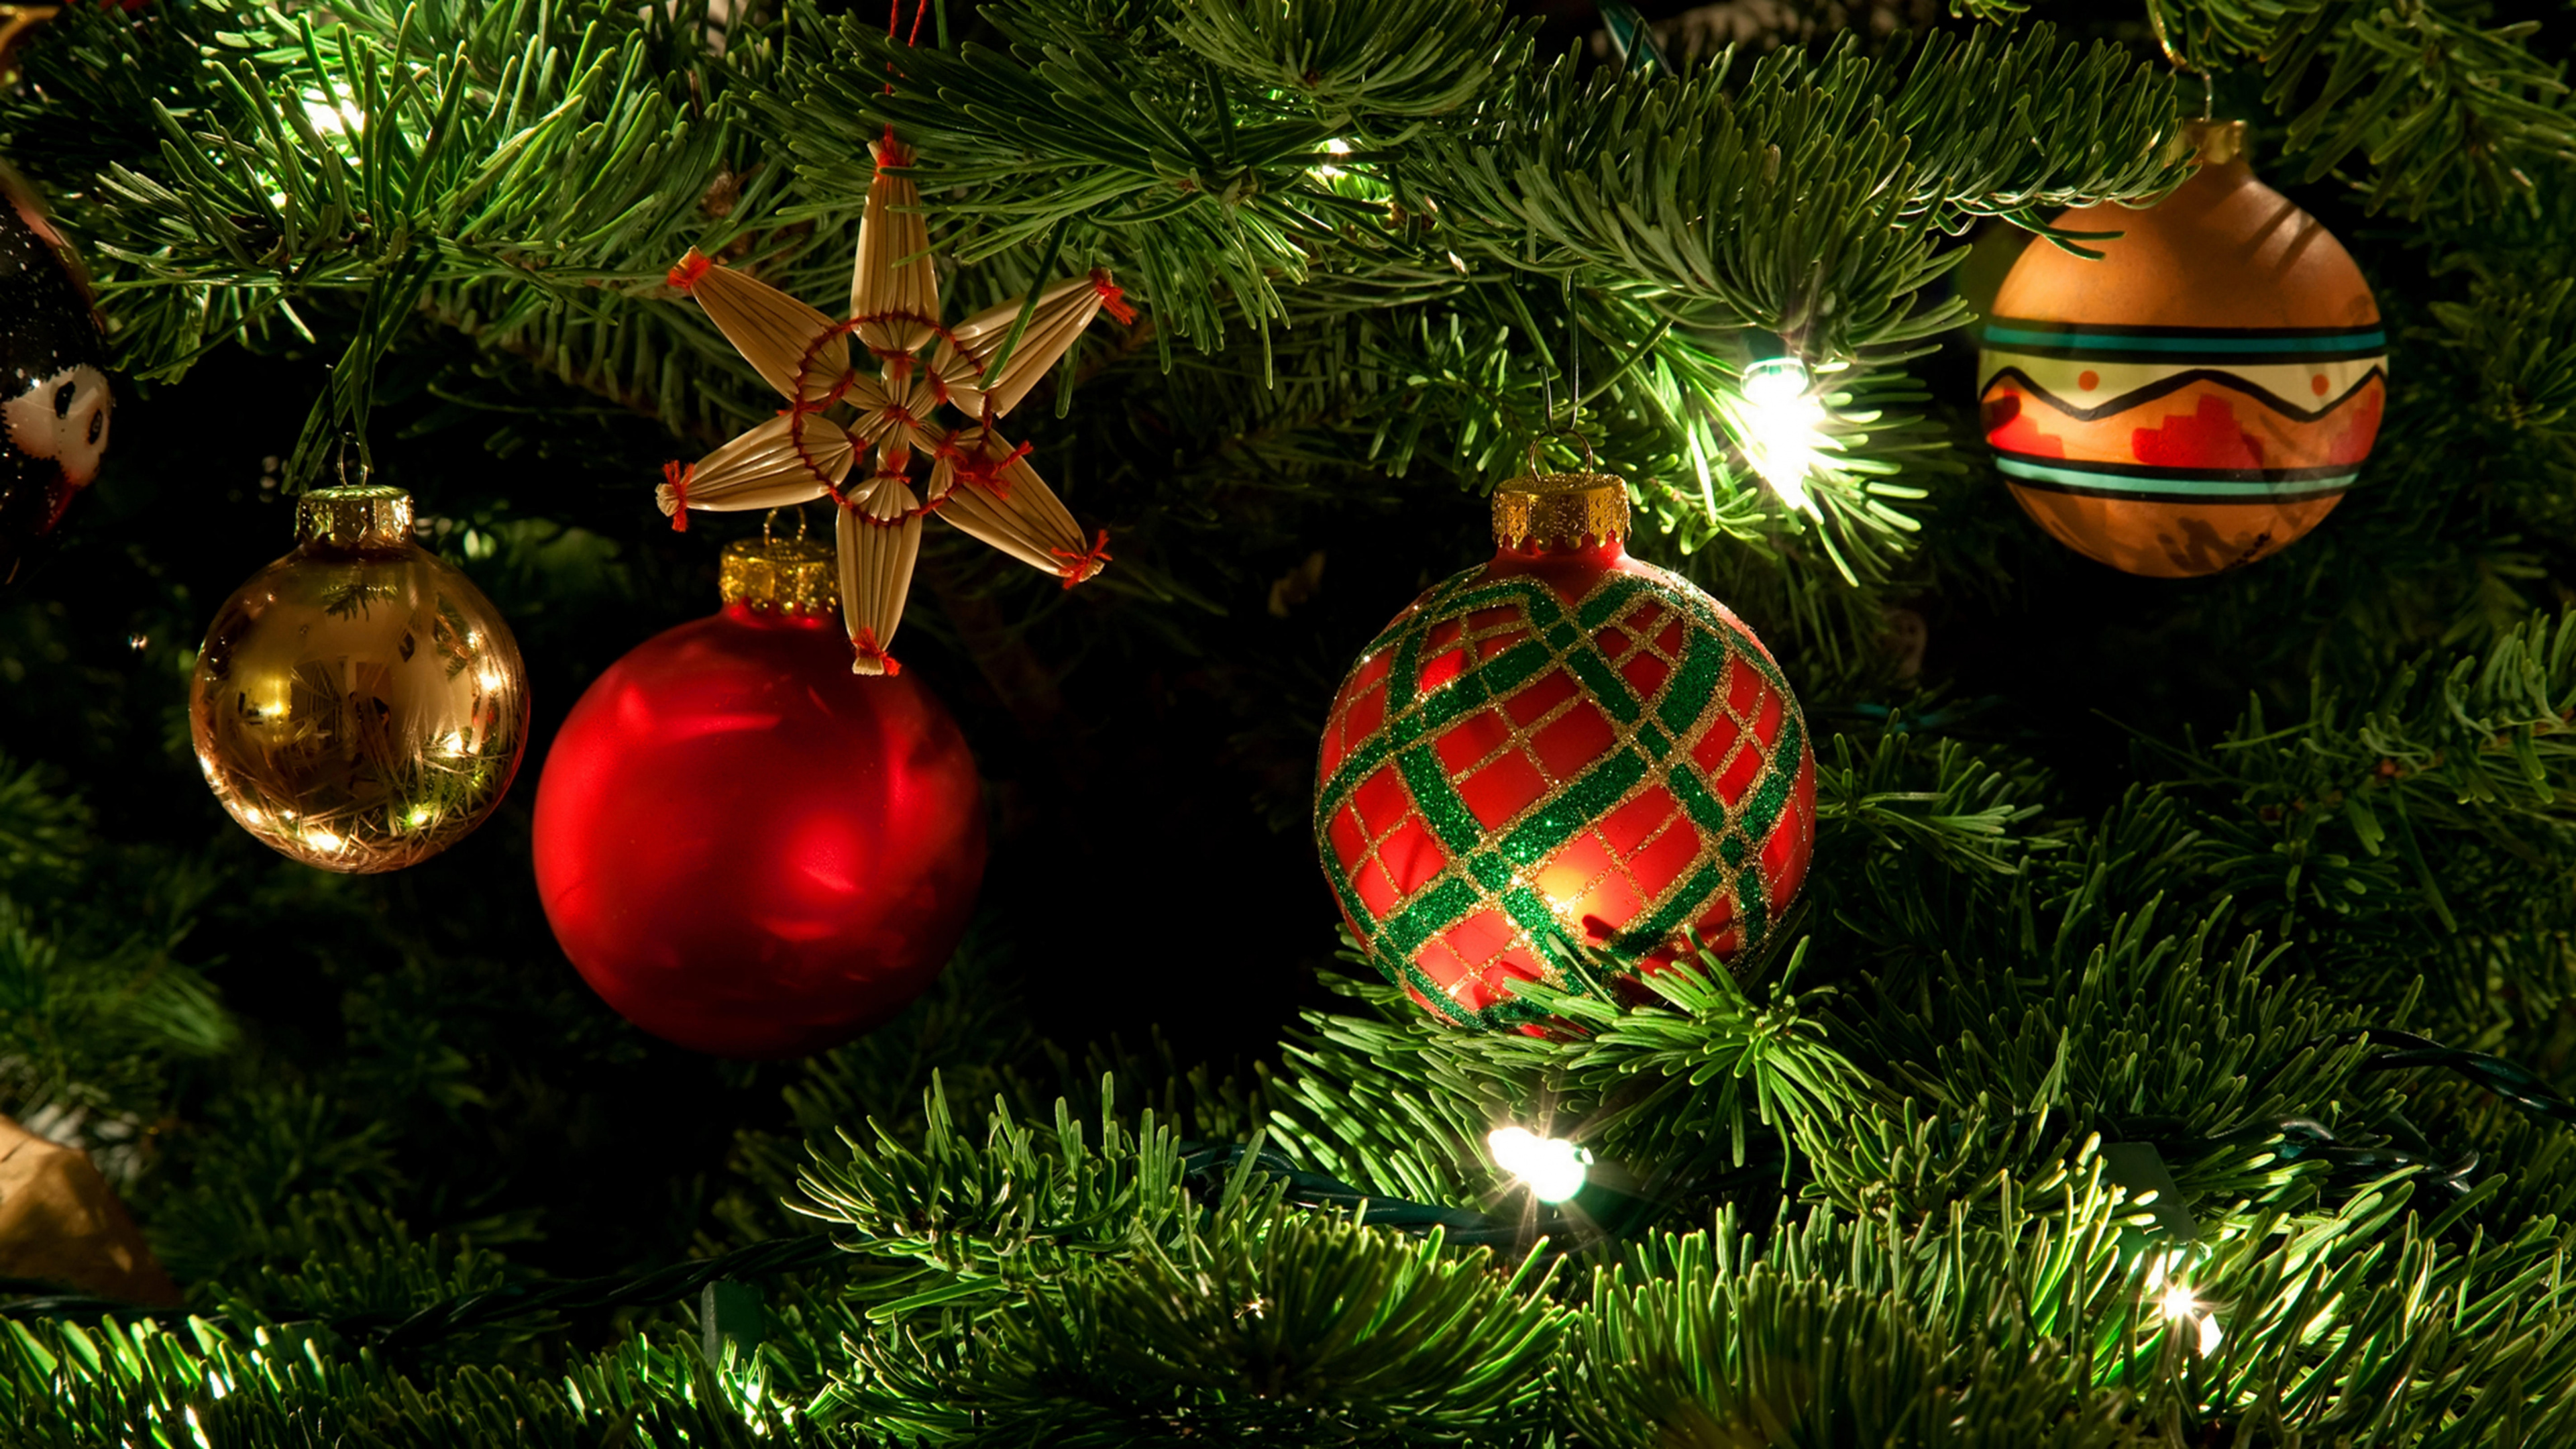 Le Jour De Noël, Ornement de Noël, Décoration de Noël, Arbre de Noël, Sapin. Wallpaper in 3840x2160 Resolution